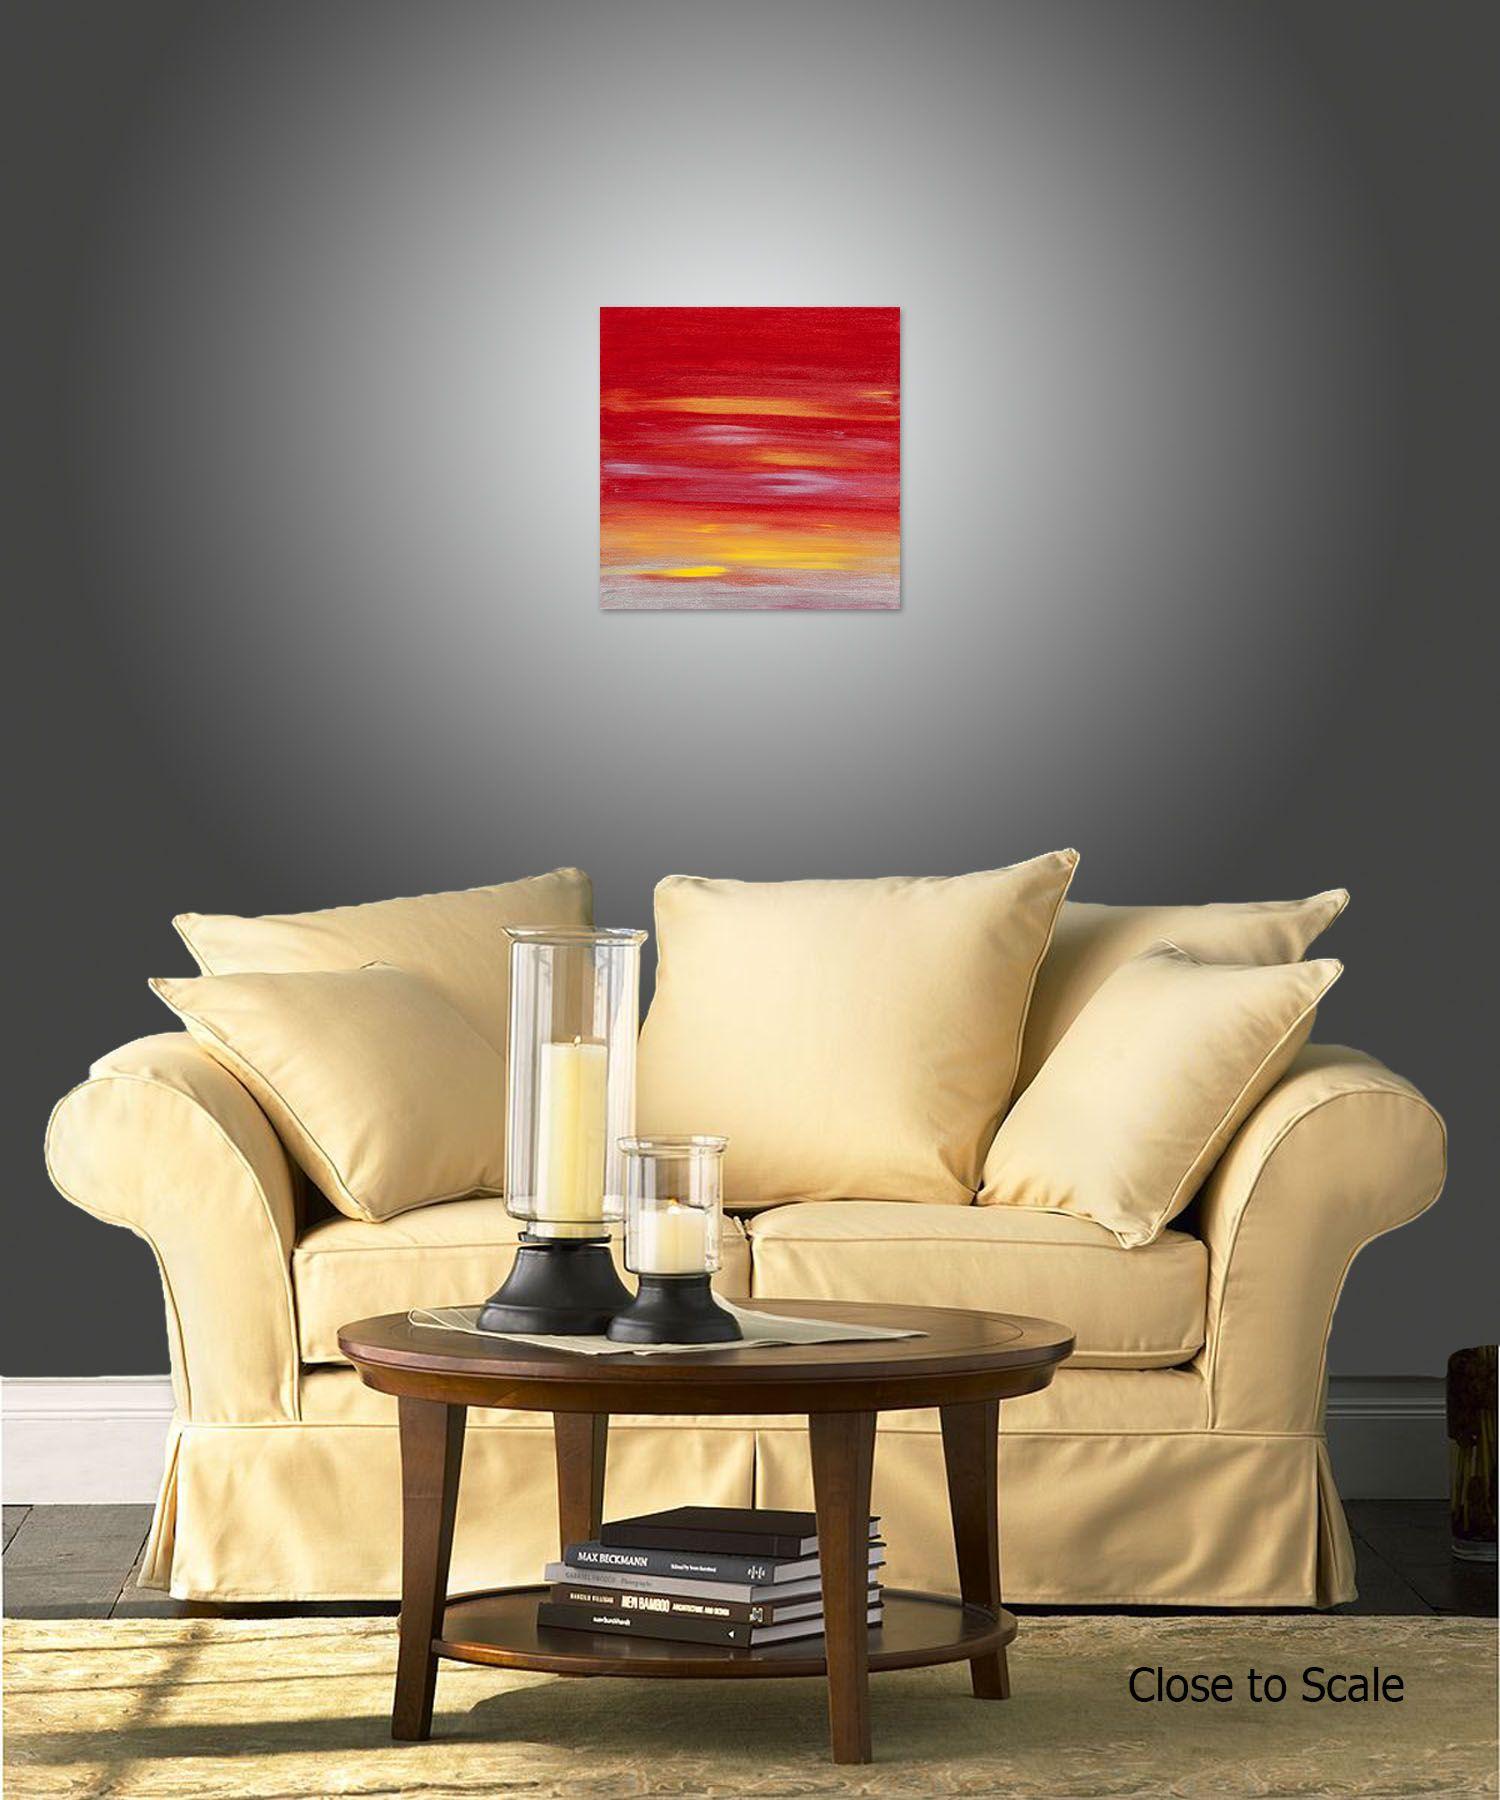 Sunset 54 ist ein originelles, modernes Gemälde aus der Sunset-Serie. Dieses einzigartige zeitgenössische Originalgemälde wurde mit Acrylfarbe auf galerieumwickelter Leinwand geschaffen.    Es hat eine Breite von 20 Zoll und eine Höhe von 20 Zoll